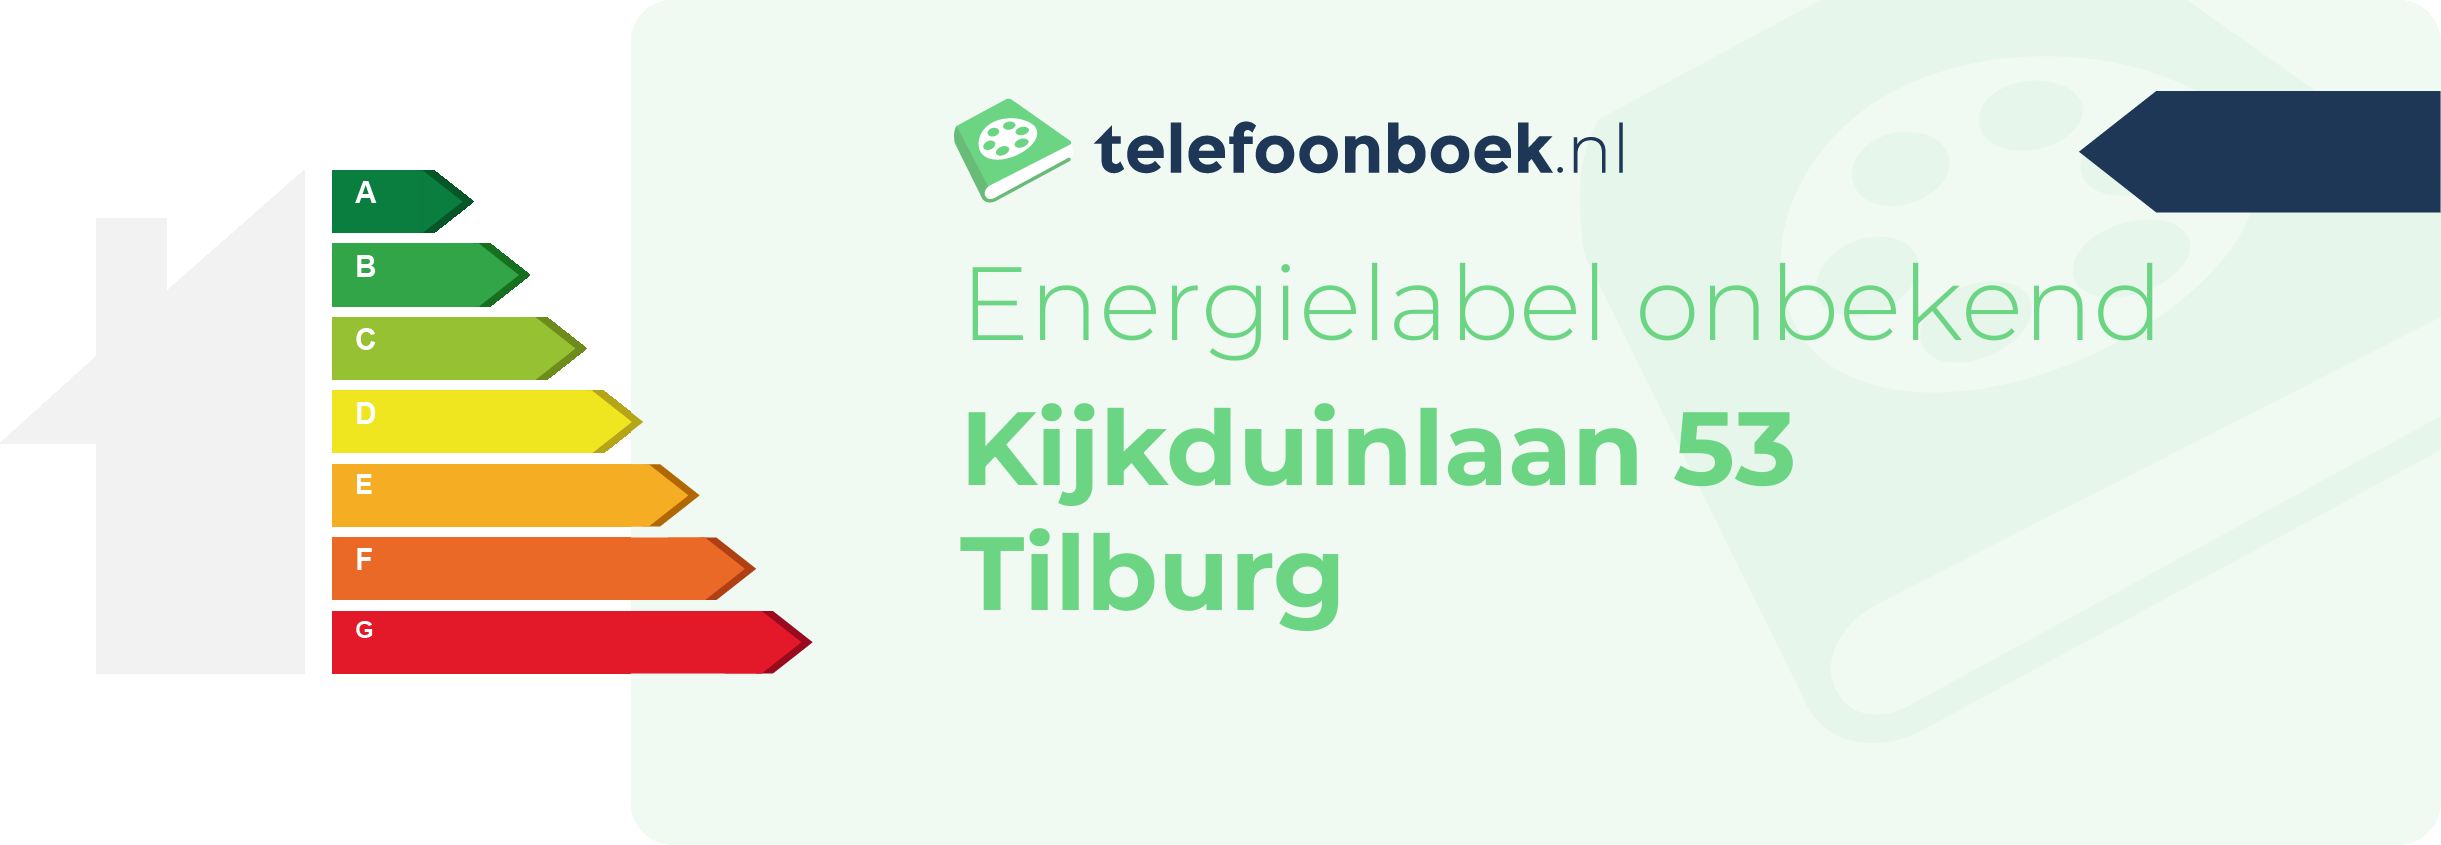 Energielabel Kijkduinlaan 53 Tilburg